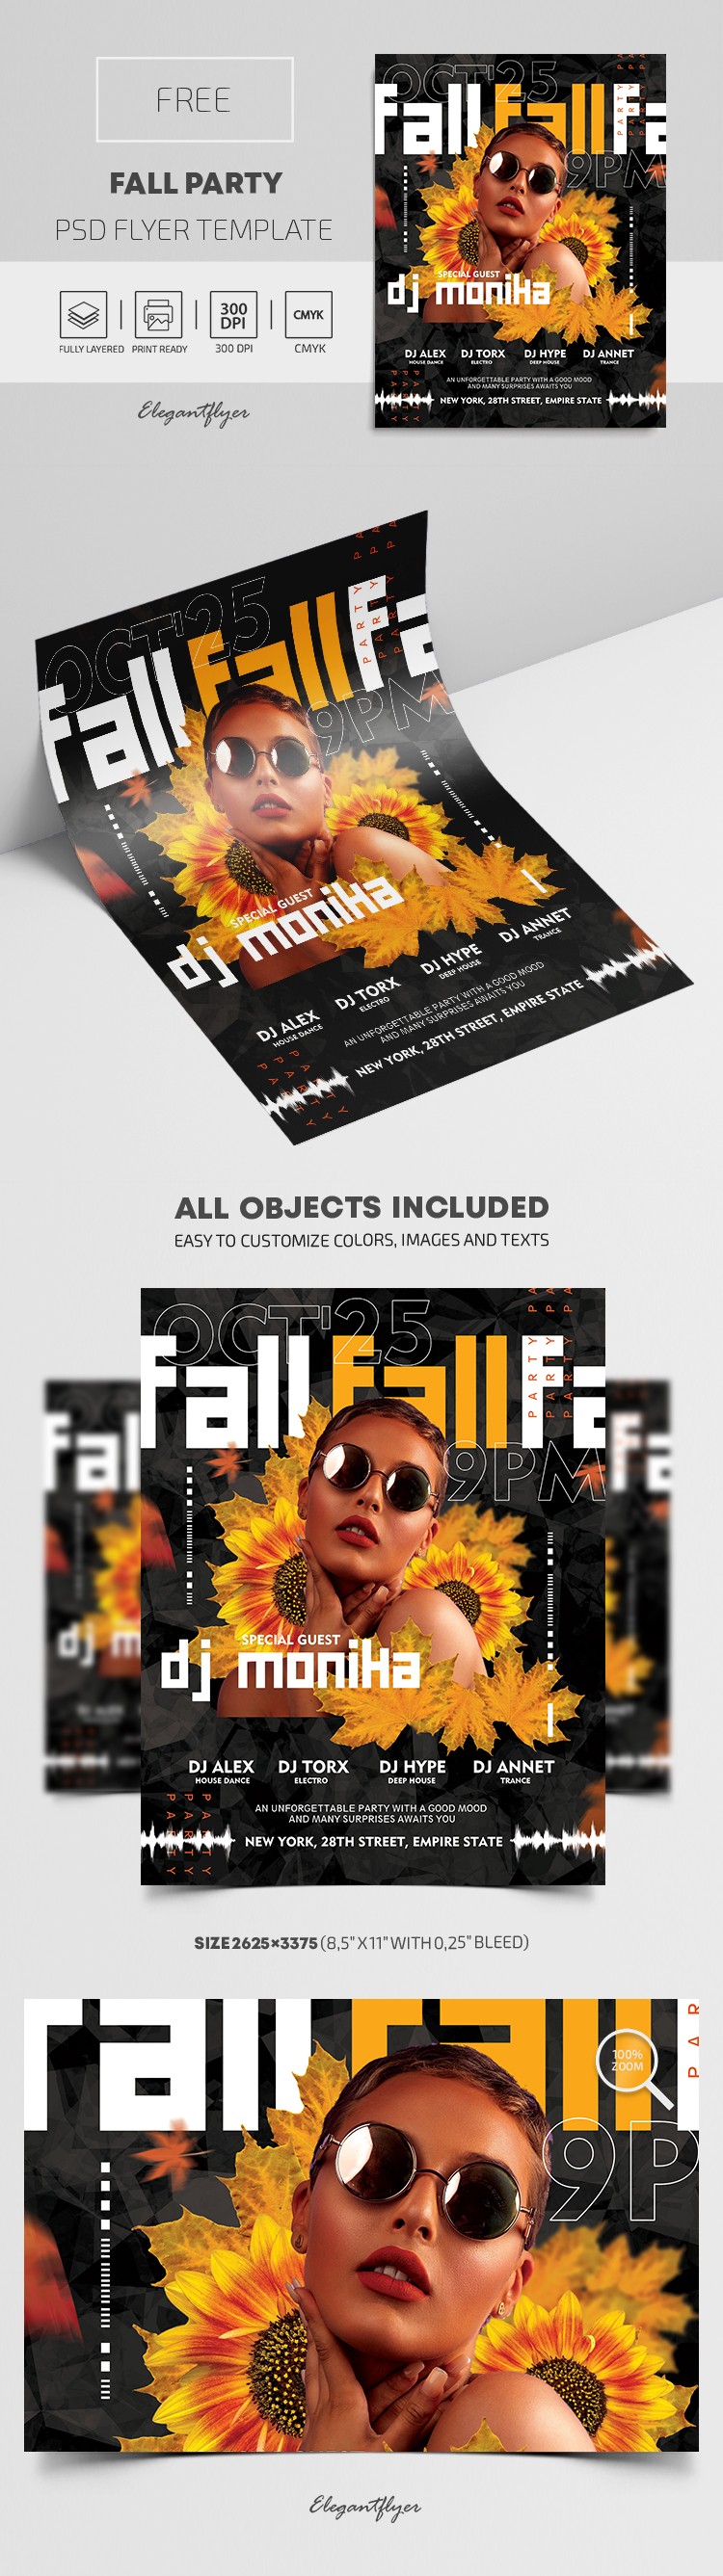 Fall Party Flyer by ElegantFlyer